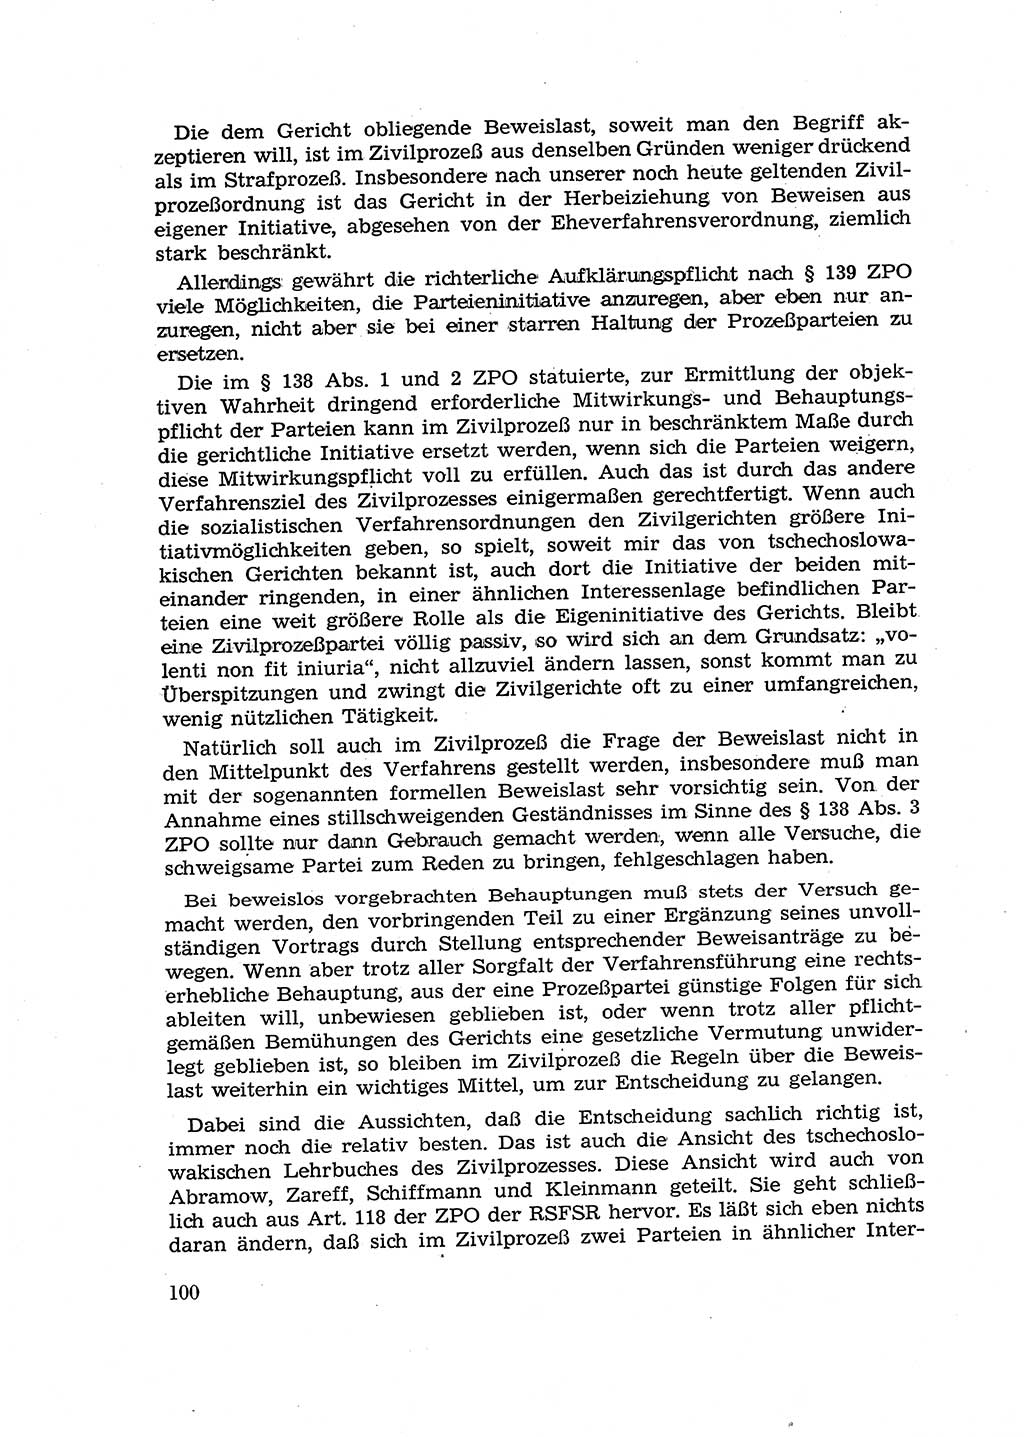 Fragen des Beweisrechts im Strafprozess [Deutsche Demokratische Republik (DDR)] 1956, Seite 100 (Fr. BeweisR. Str.-Proz. DDR 1956, S. 100)